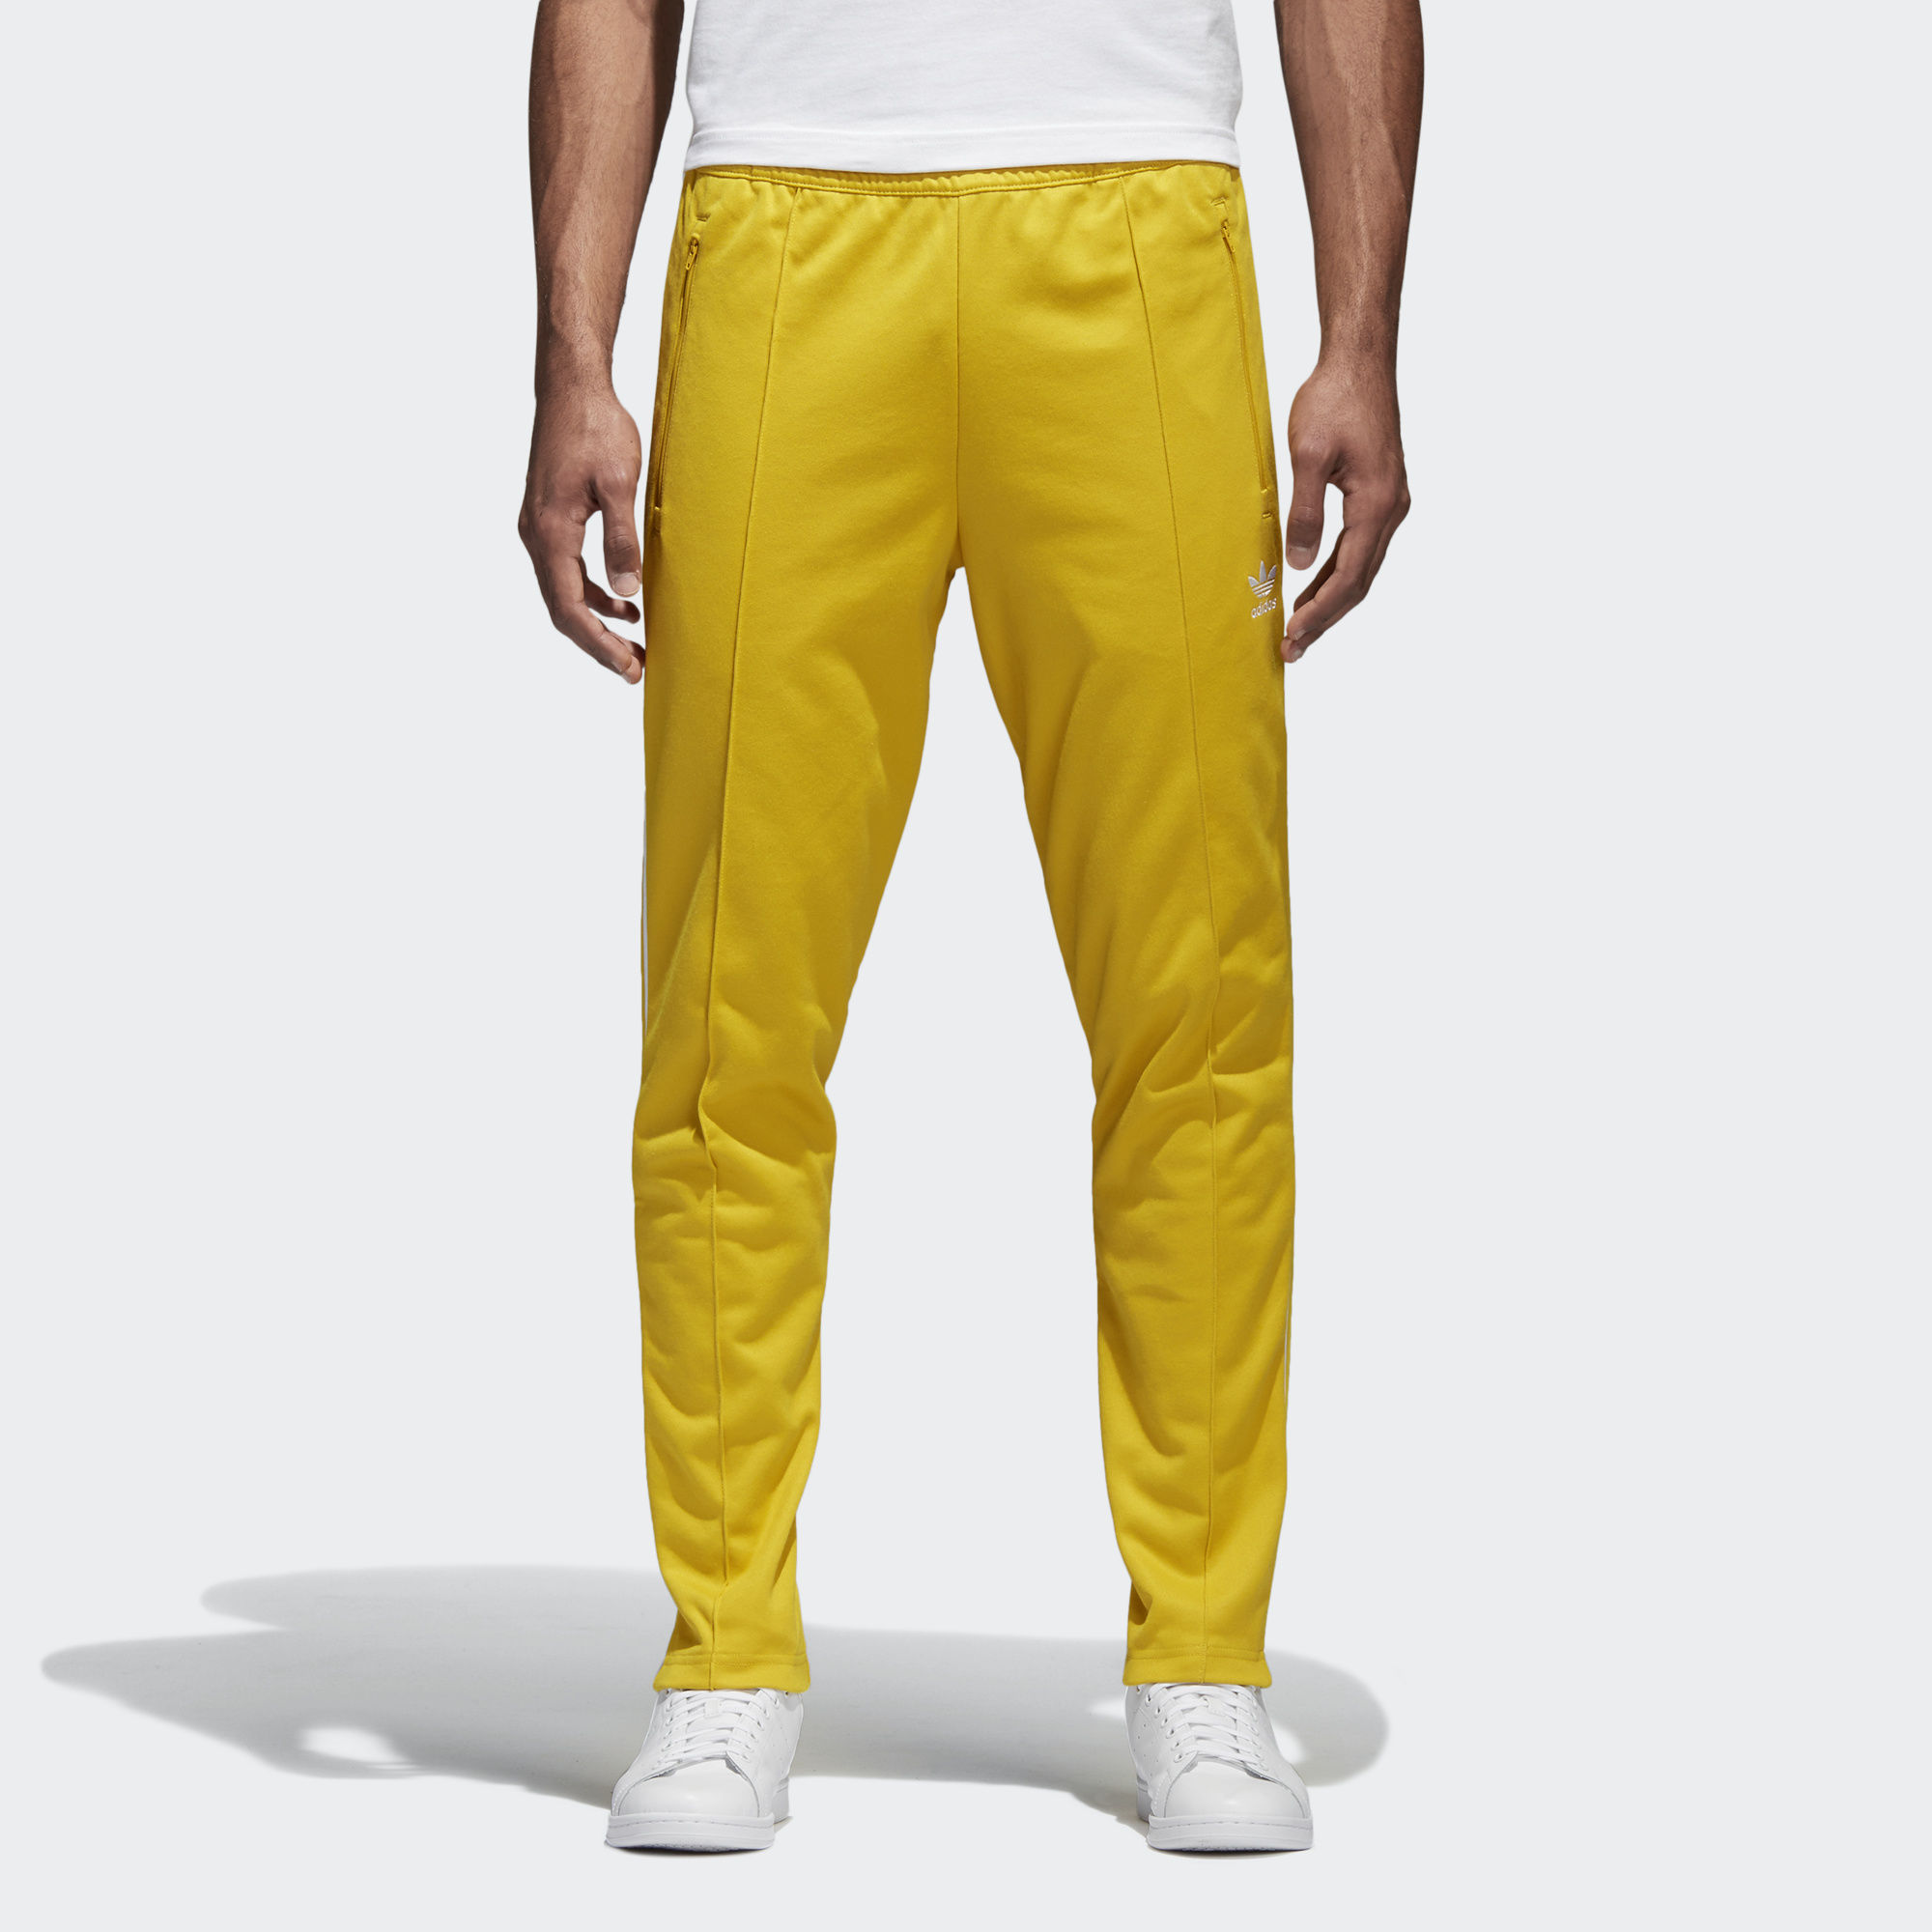 Игра желтые штаны. Adidas Originals Beckenbauer штаны. Брюки adidas Originals Beckenbauer мужские. Жёлтые штаны адидас мужские. Штаны adidas Originals мужские жёлтые.